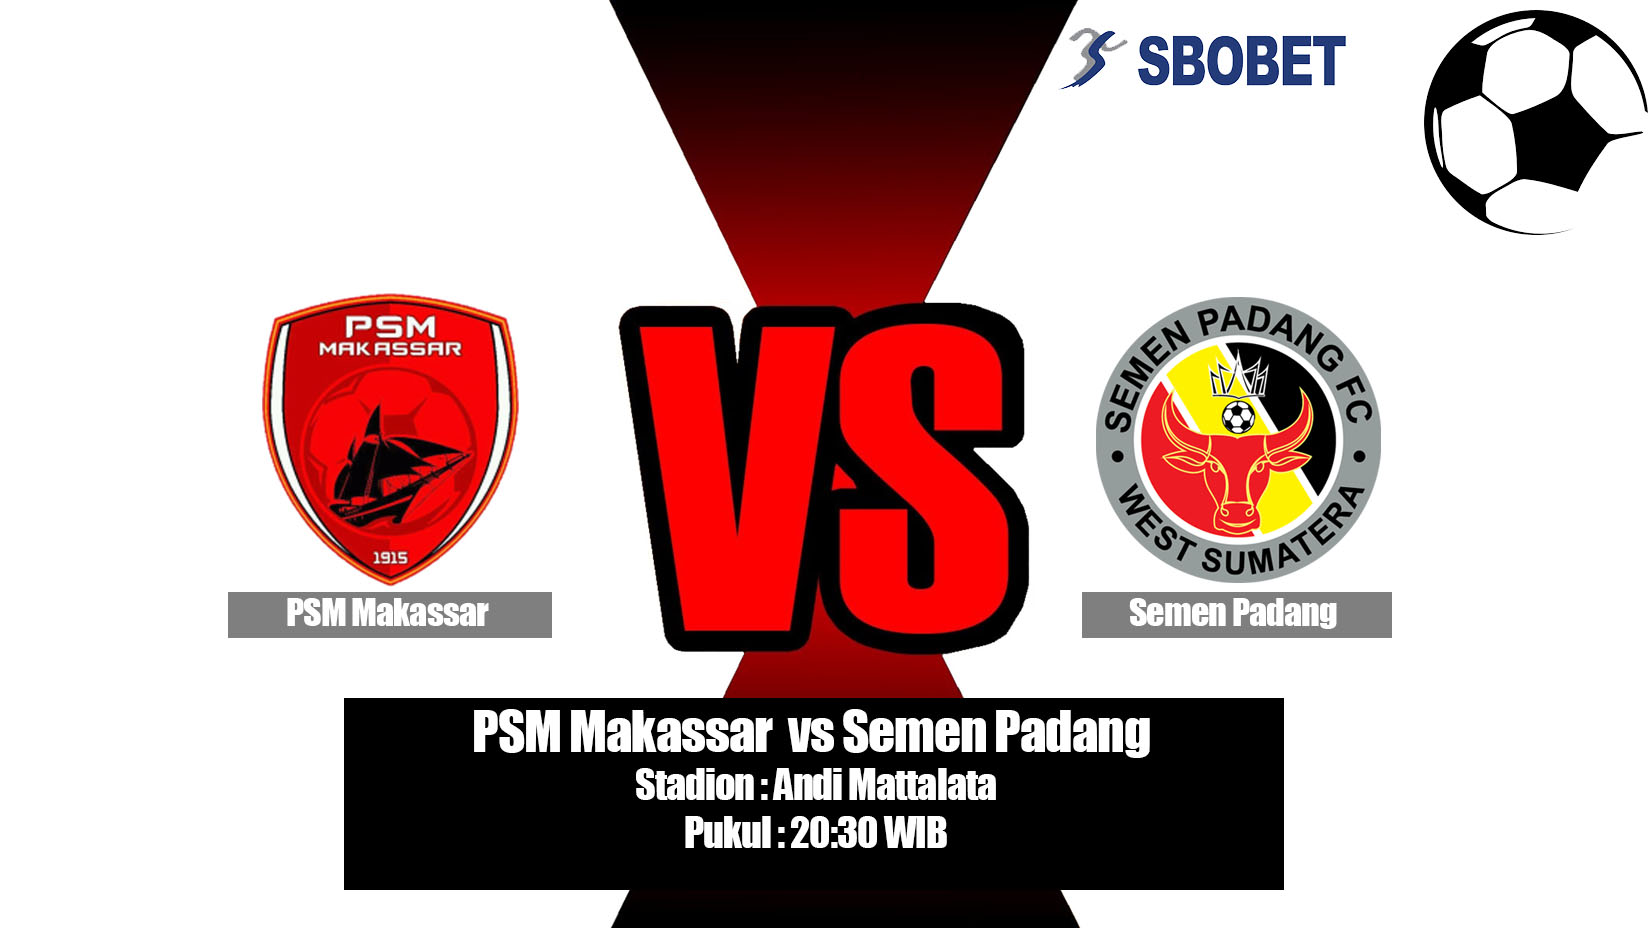 Prediksi Bola PSM Makassar vs Semen Padang 20 Mei 2019